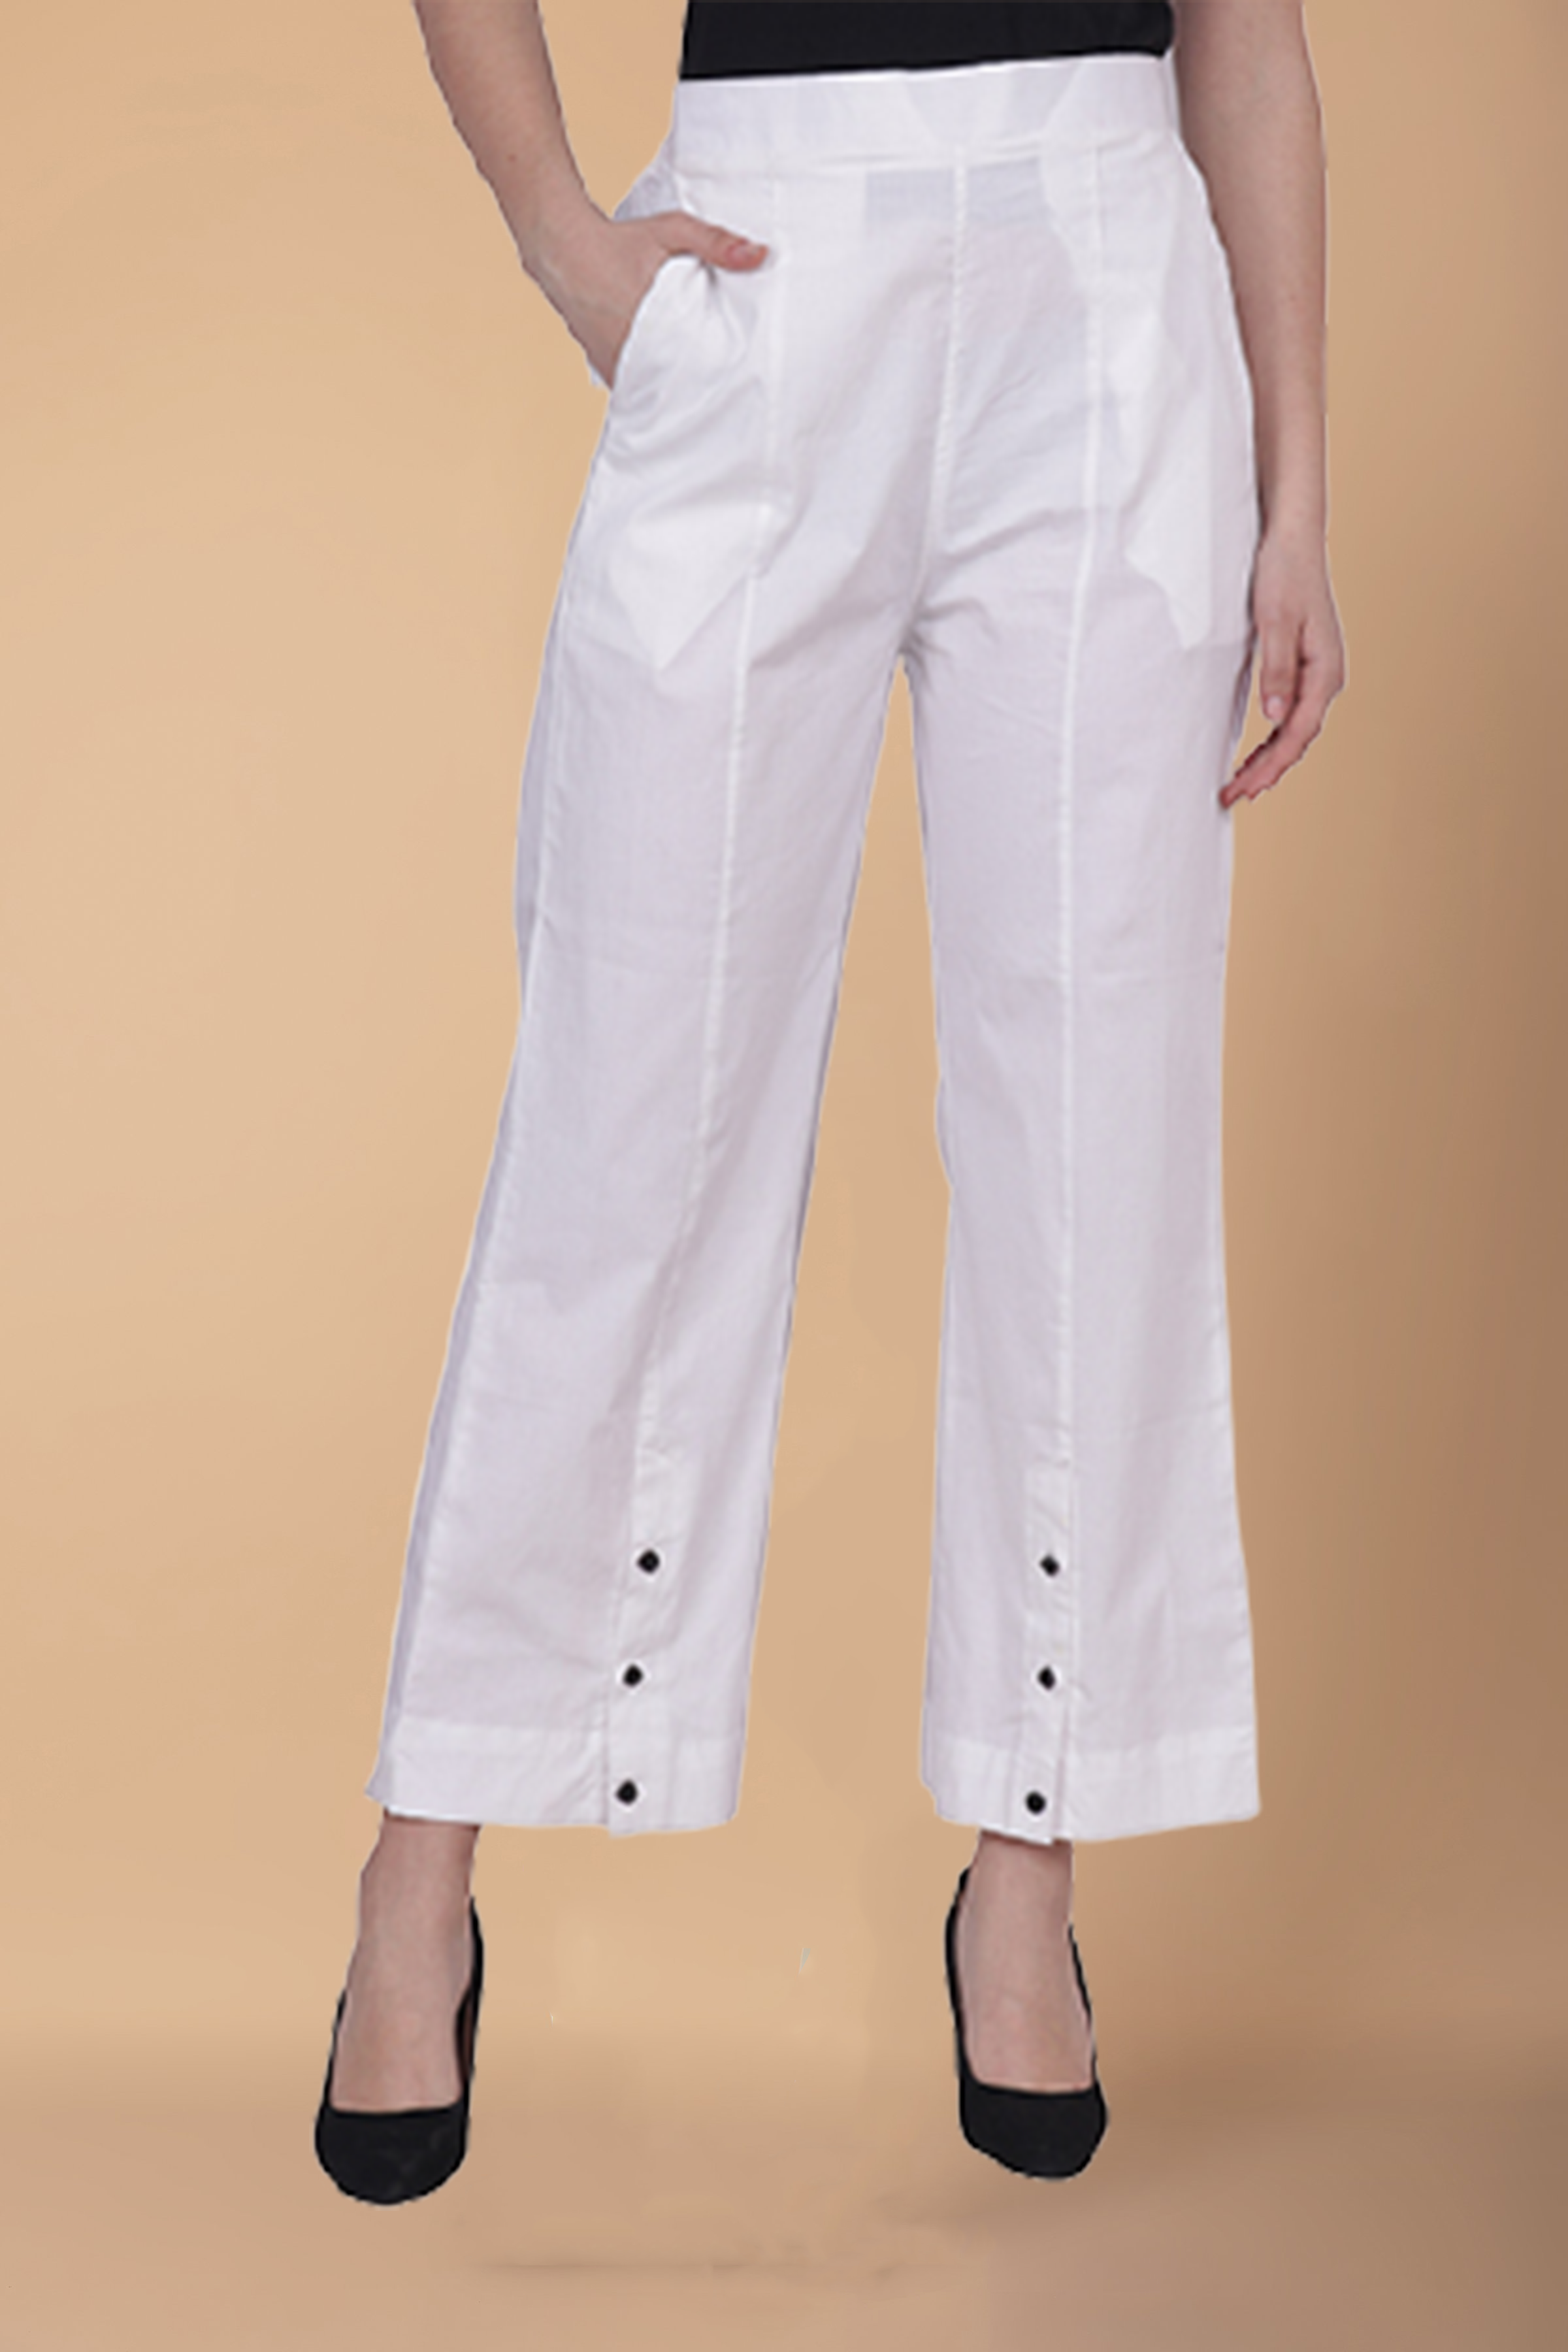 Buy Plus Size Women's Pants & Plus Size Palazzo Pants - Apella